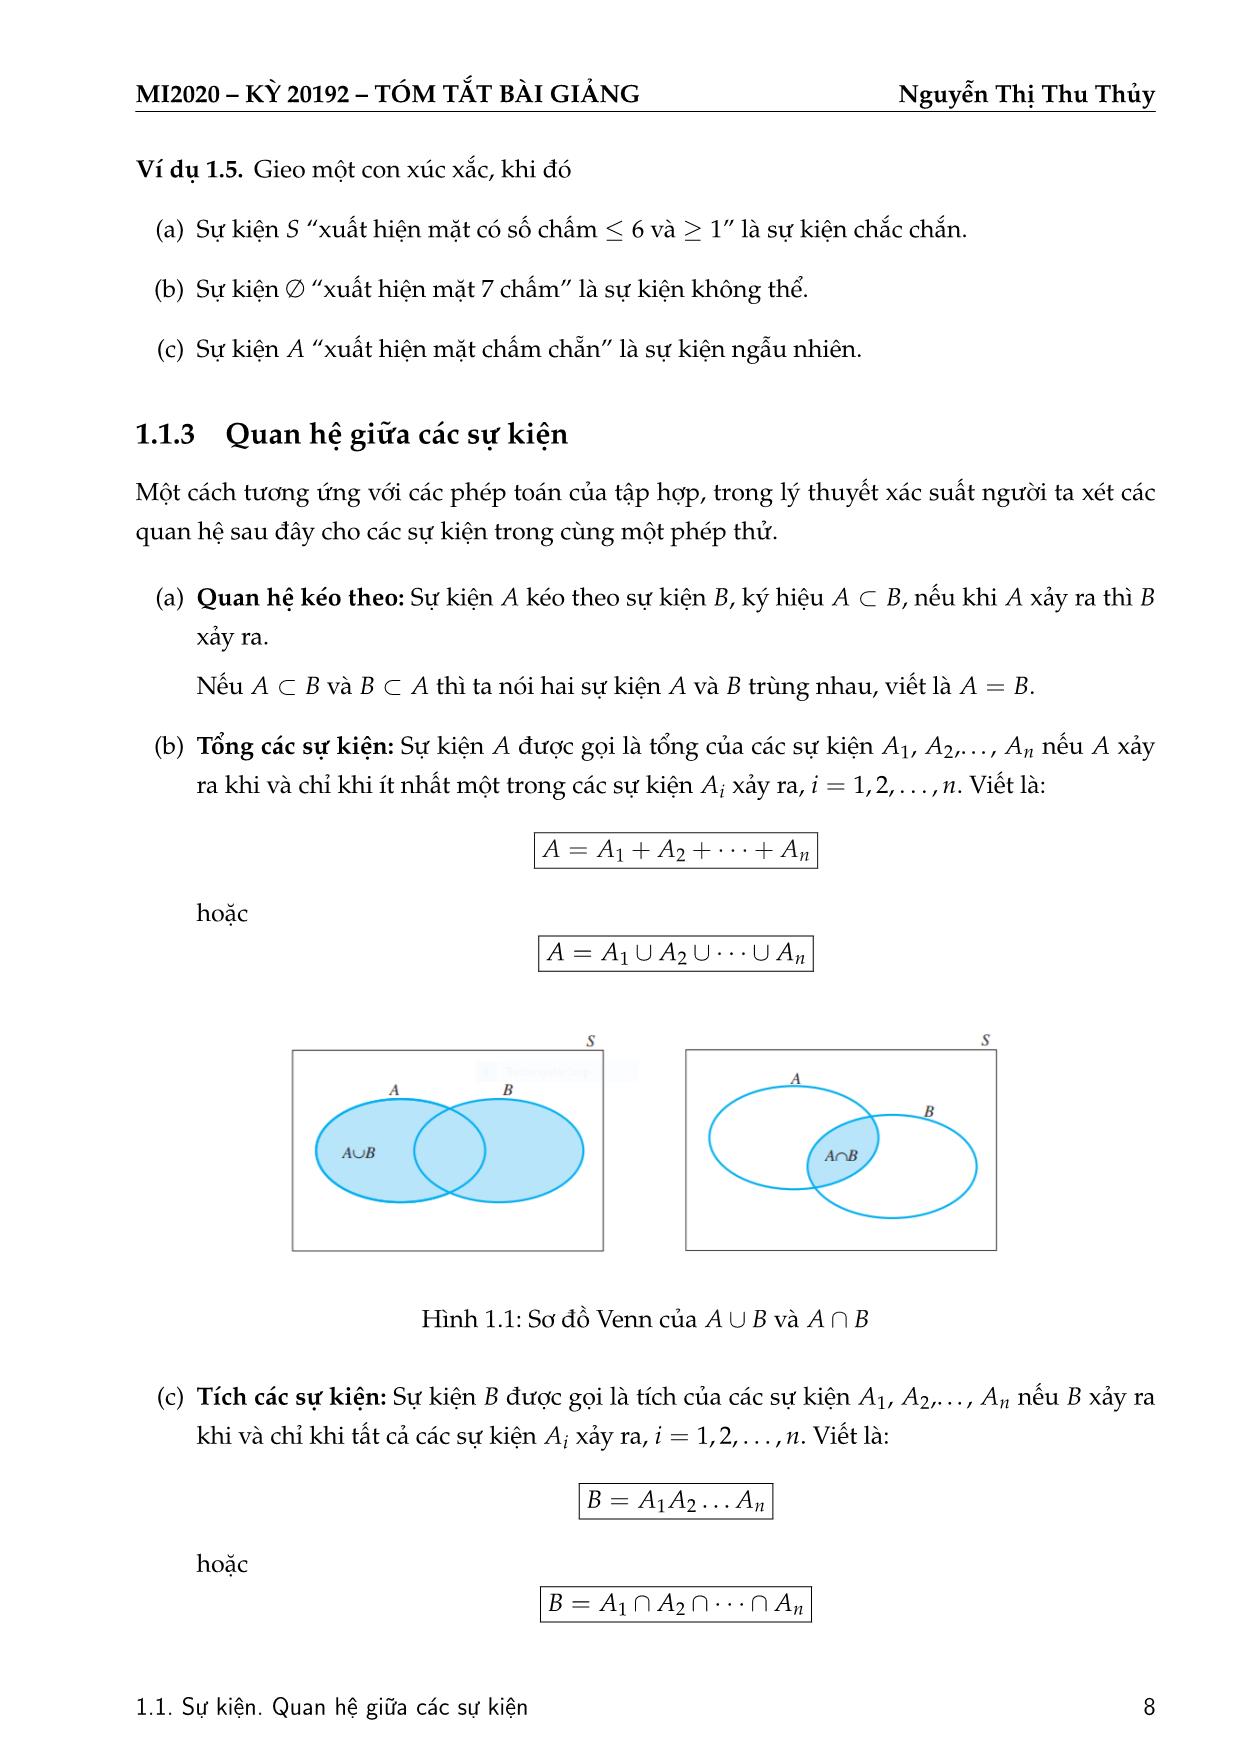 Bài giảng Xác suất thống kê - Chương 1: Sự kiện ngẫu nhiên và phép tính xác suất - Nguyễn Thị Thu Thủy trang 9